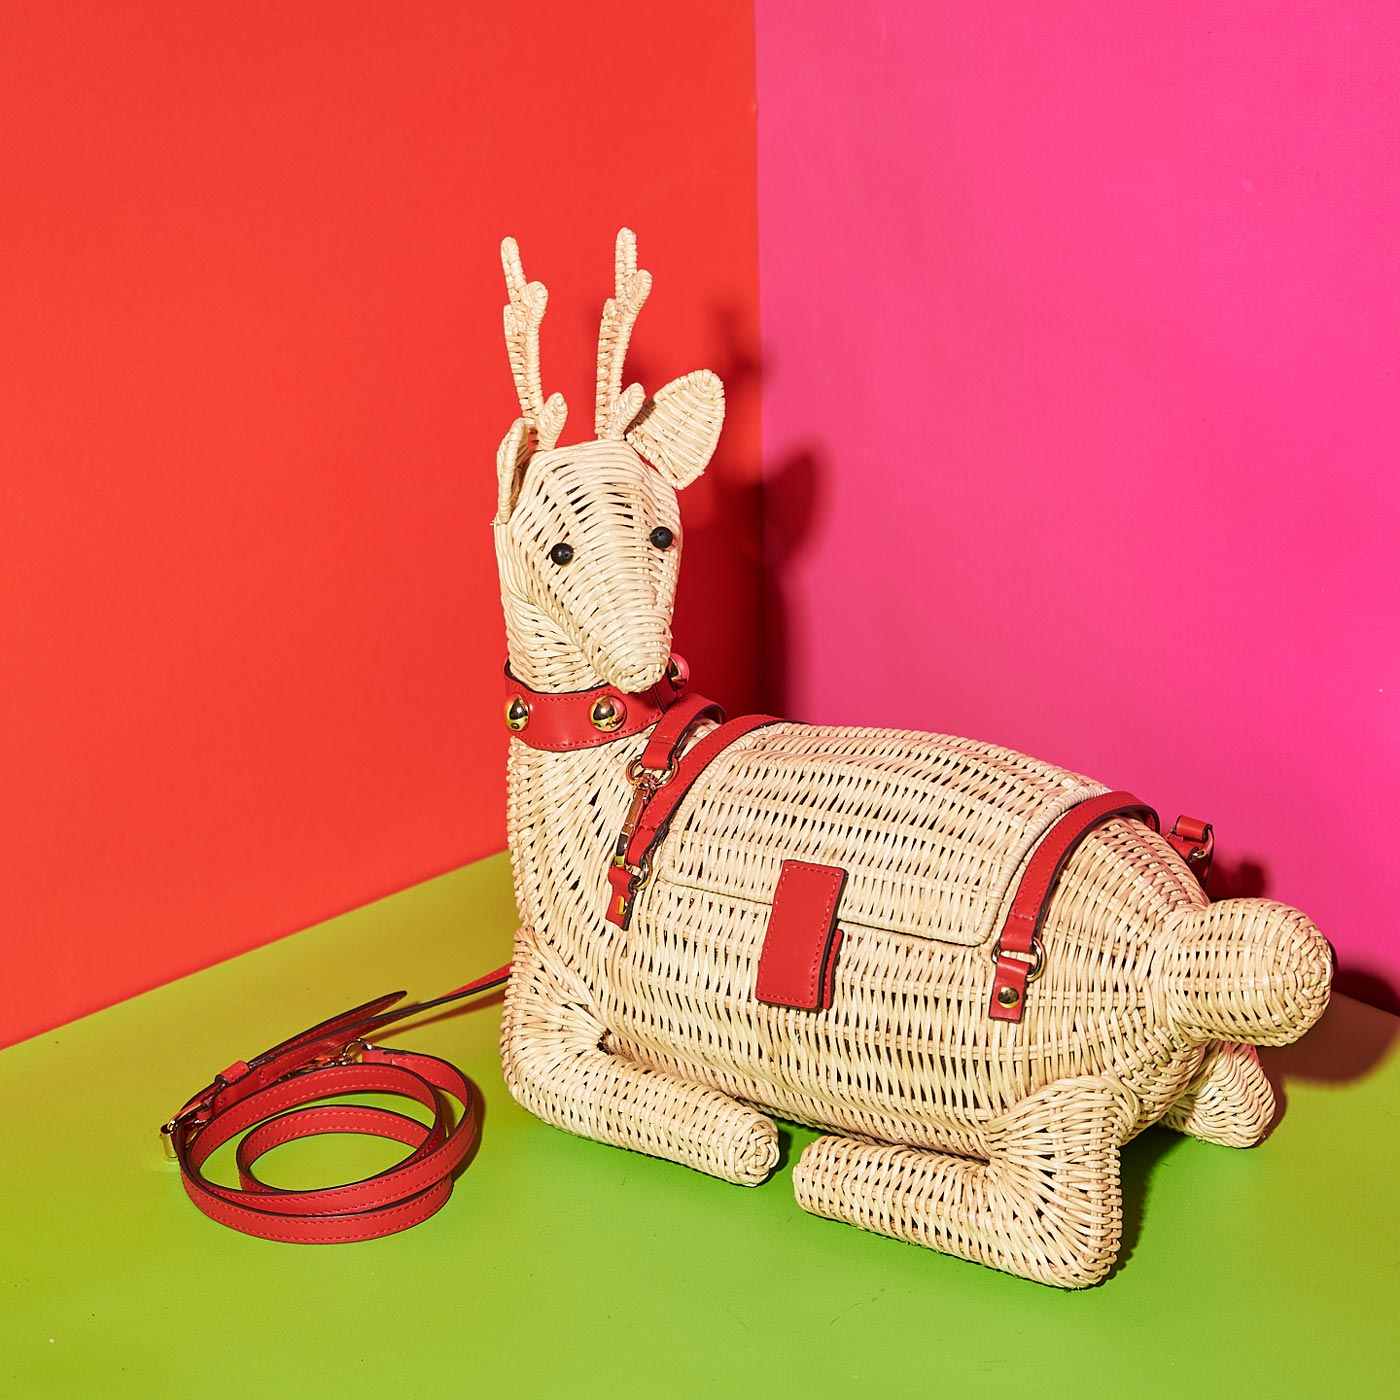 Wicker Darling's Jingle Bell the reindeer bag